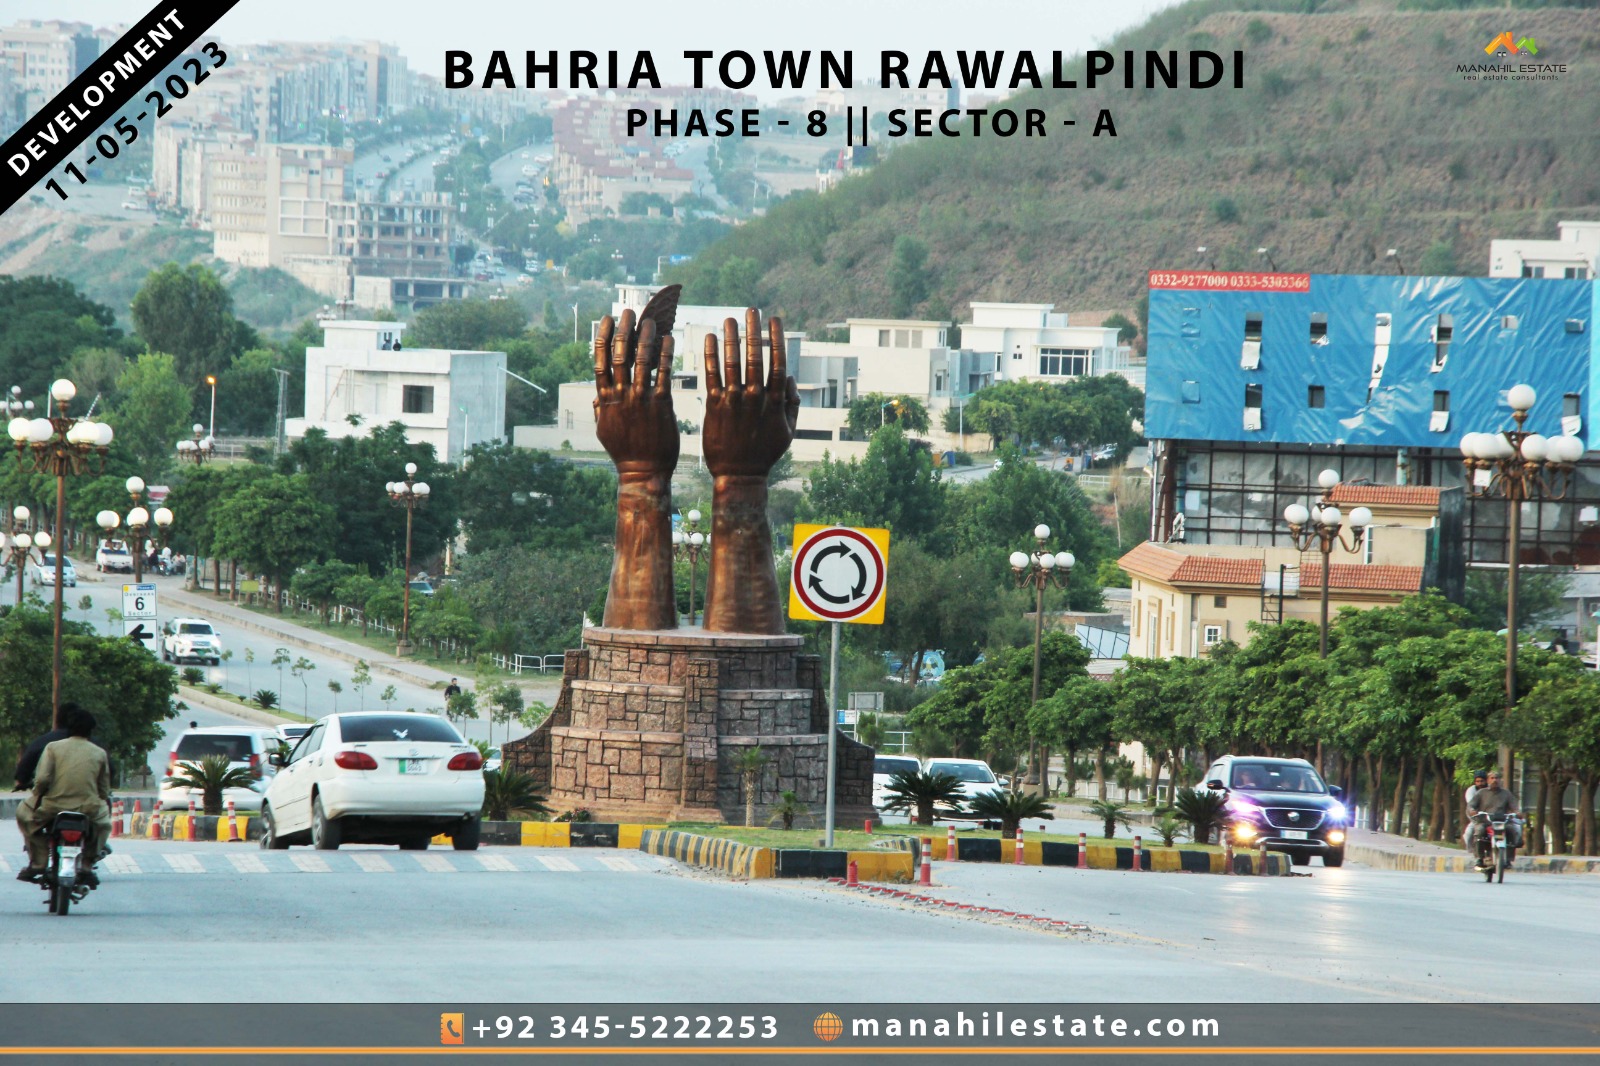 Sector A, Phase 8, Bahria Town Rawalpindi